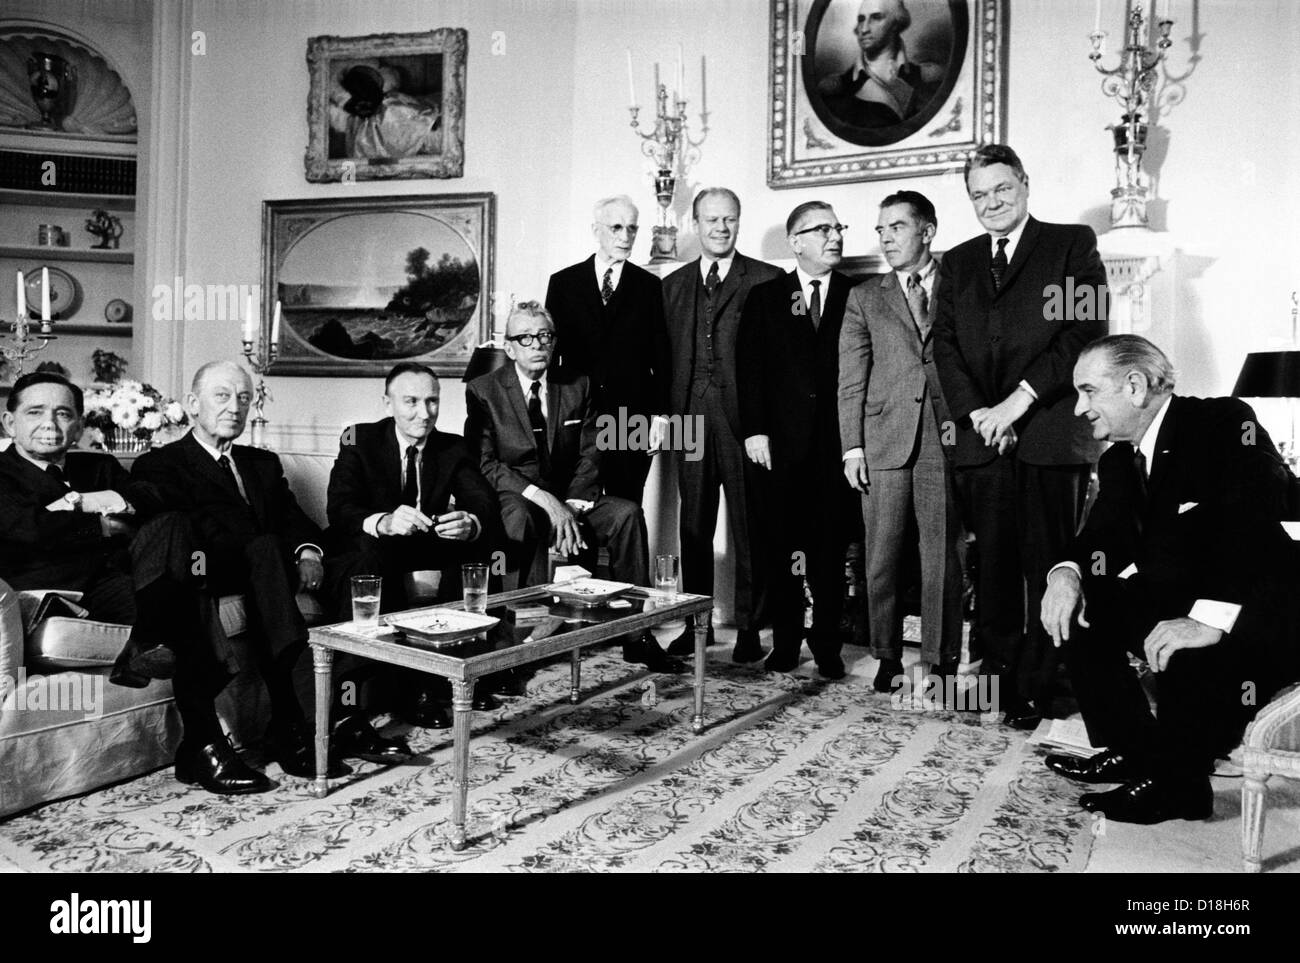 Le point d'être remplacé par le président élu de Richard Nixon, le Président Lyndon Johnson a une dernière réunion avec les dirigeants du Congrès. Banque D'Images